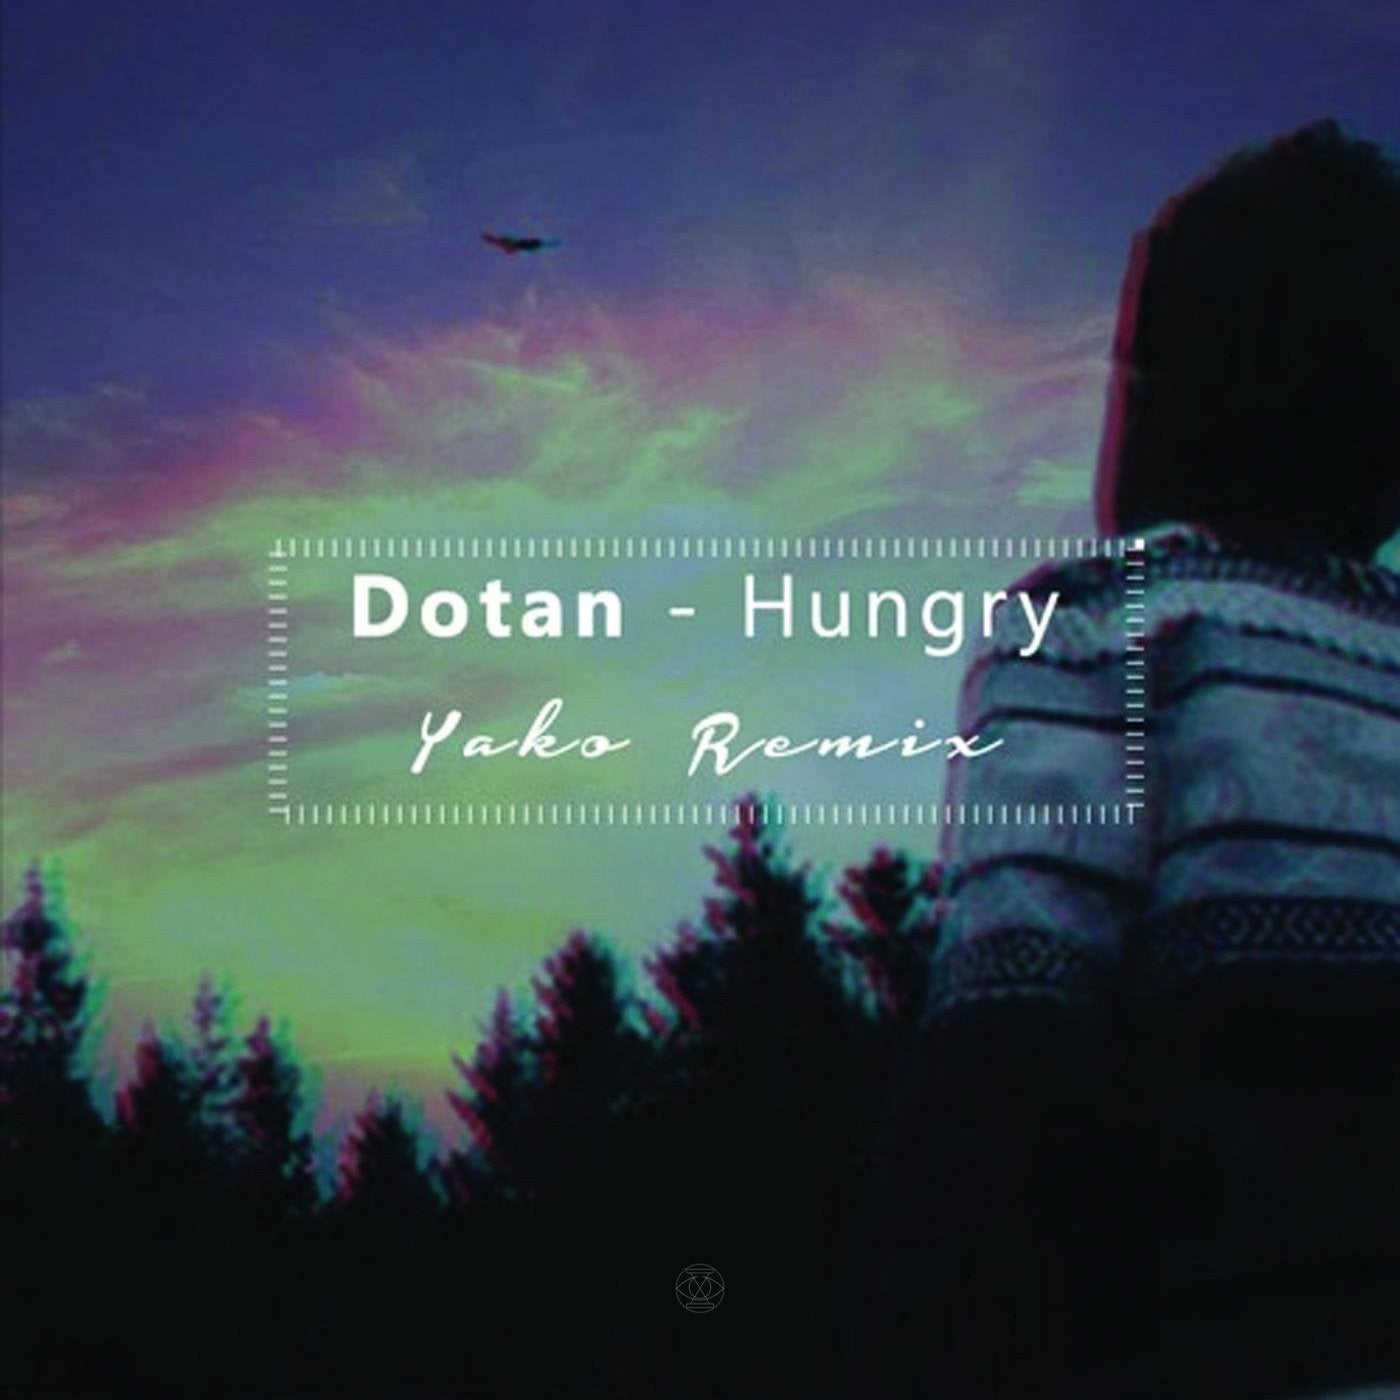 Hungry (Remix)